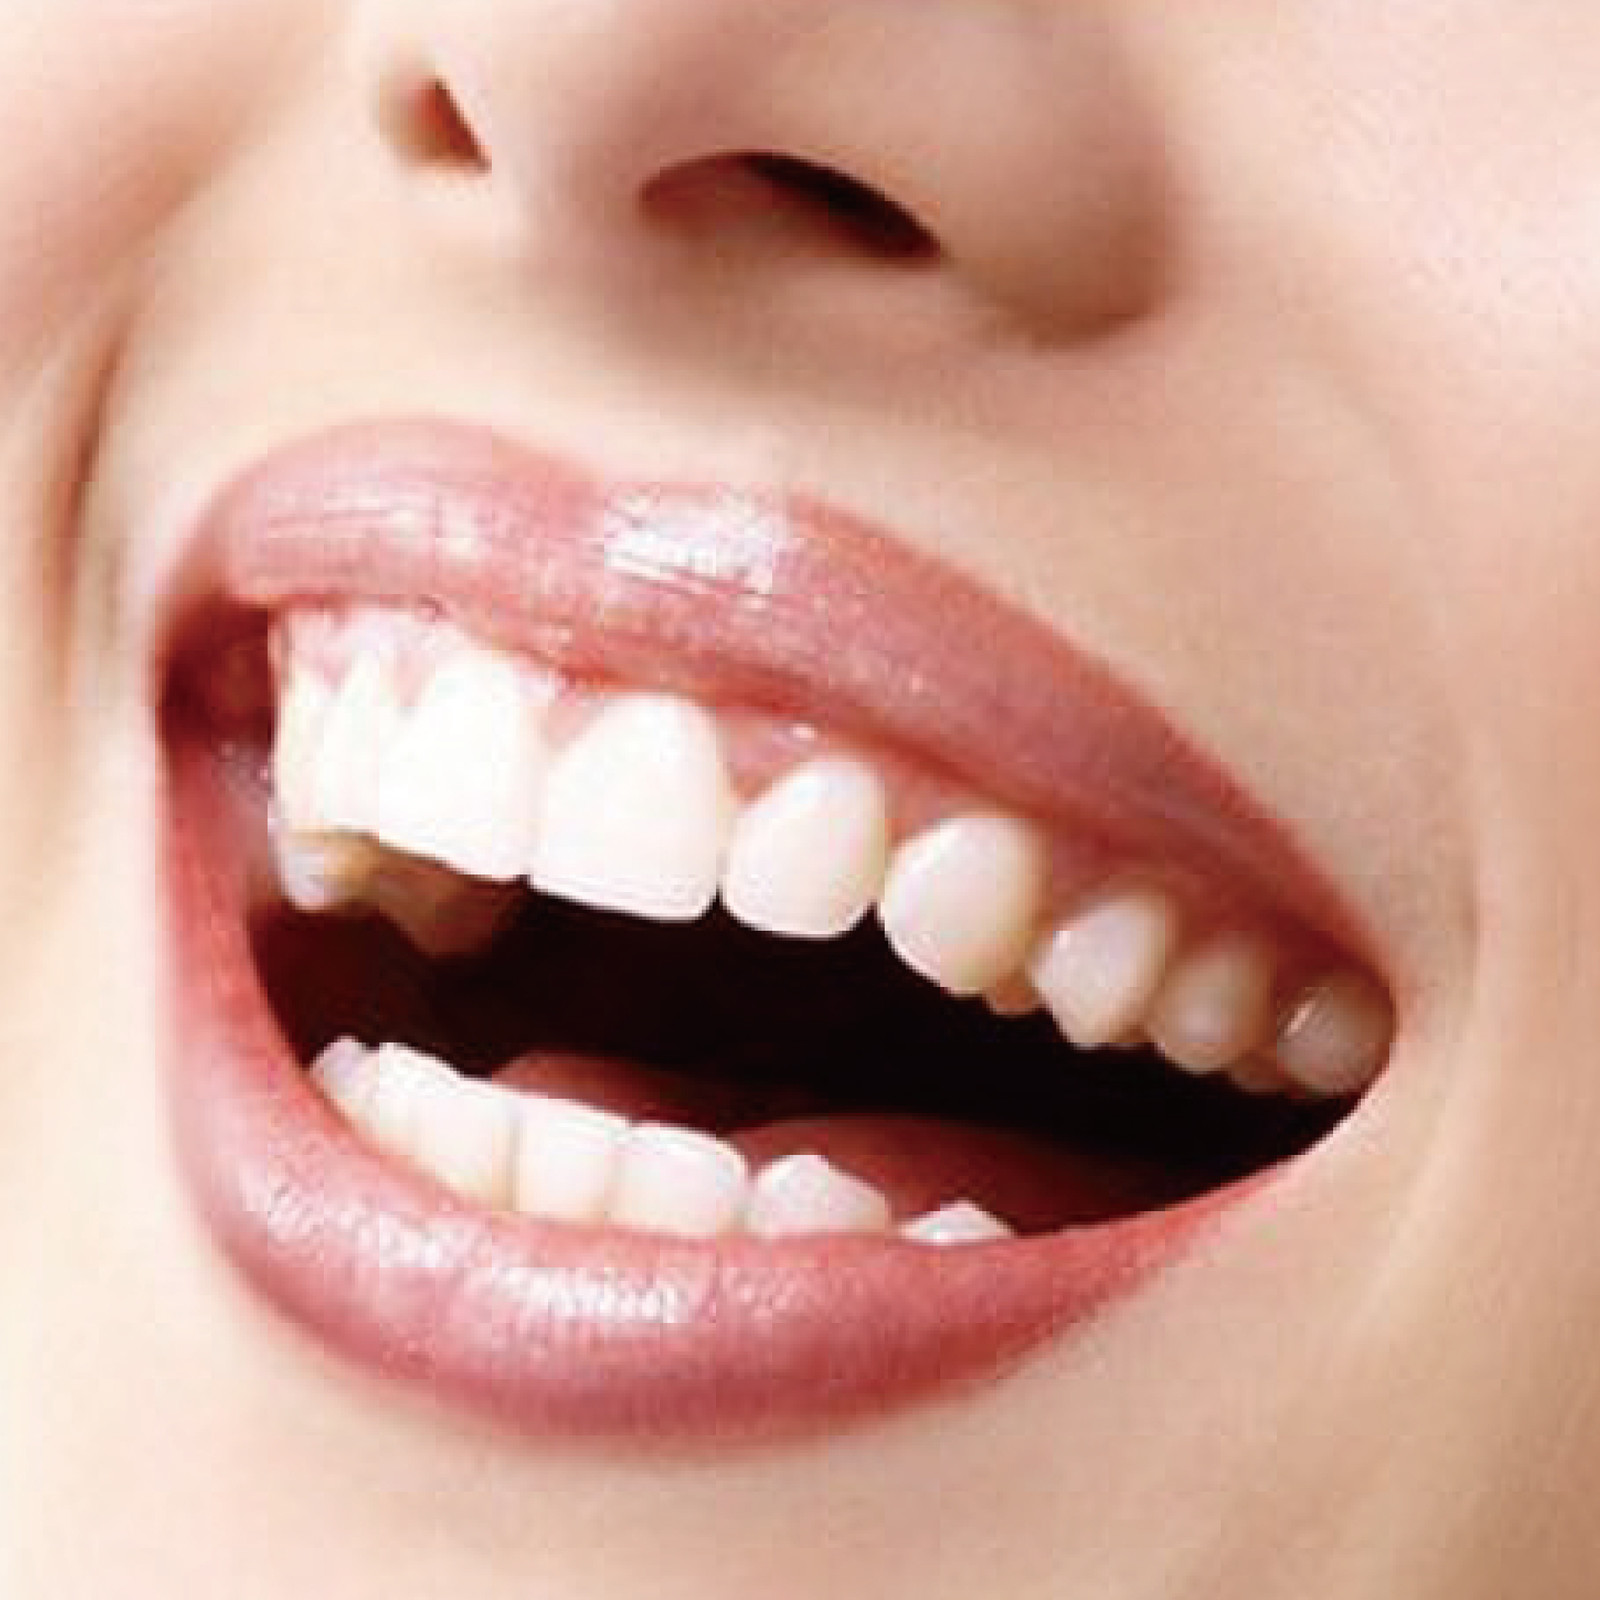 固定镶牙,口腔诊疗项目,镶牙,牙科网www.yadashi.com